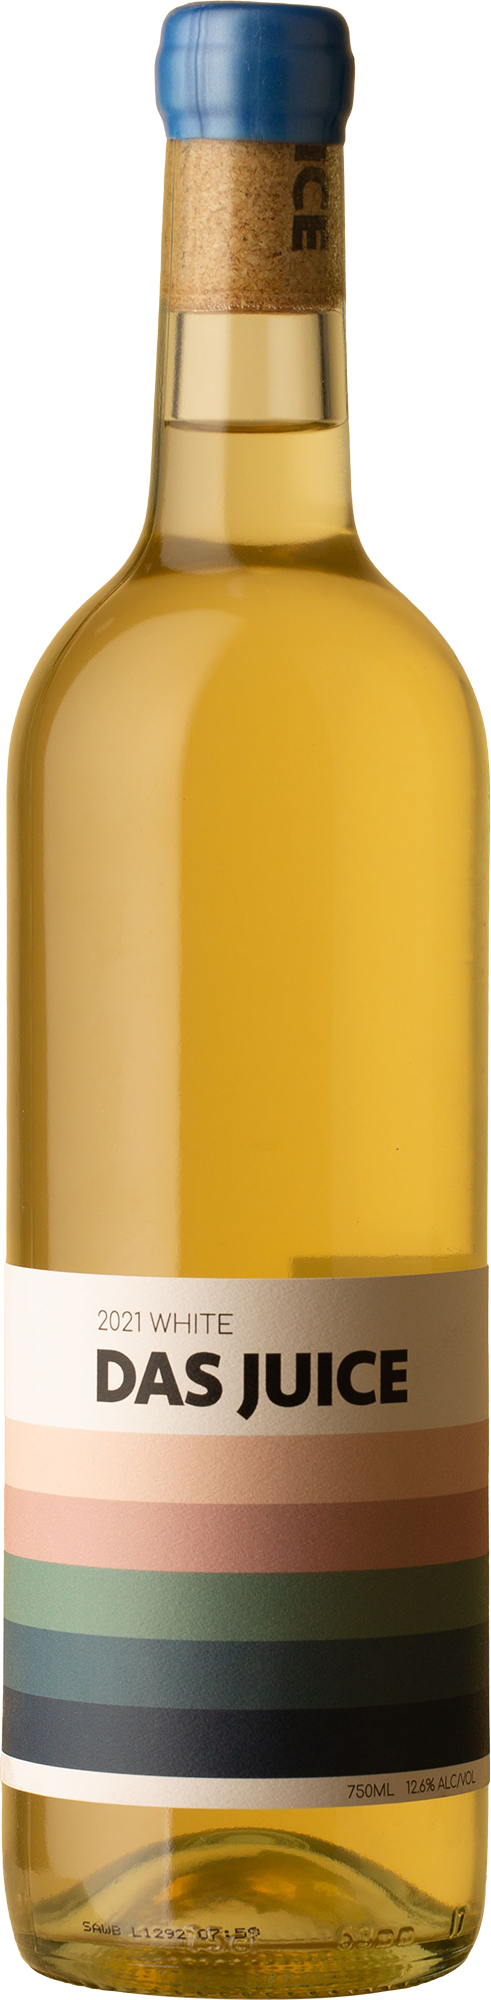 Das Juice - White Blend 2021 White Wine